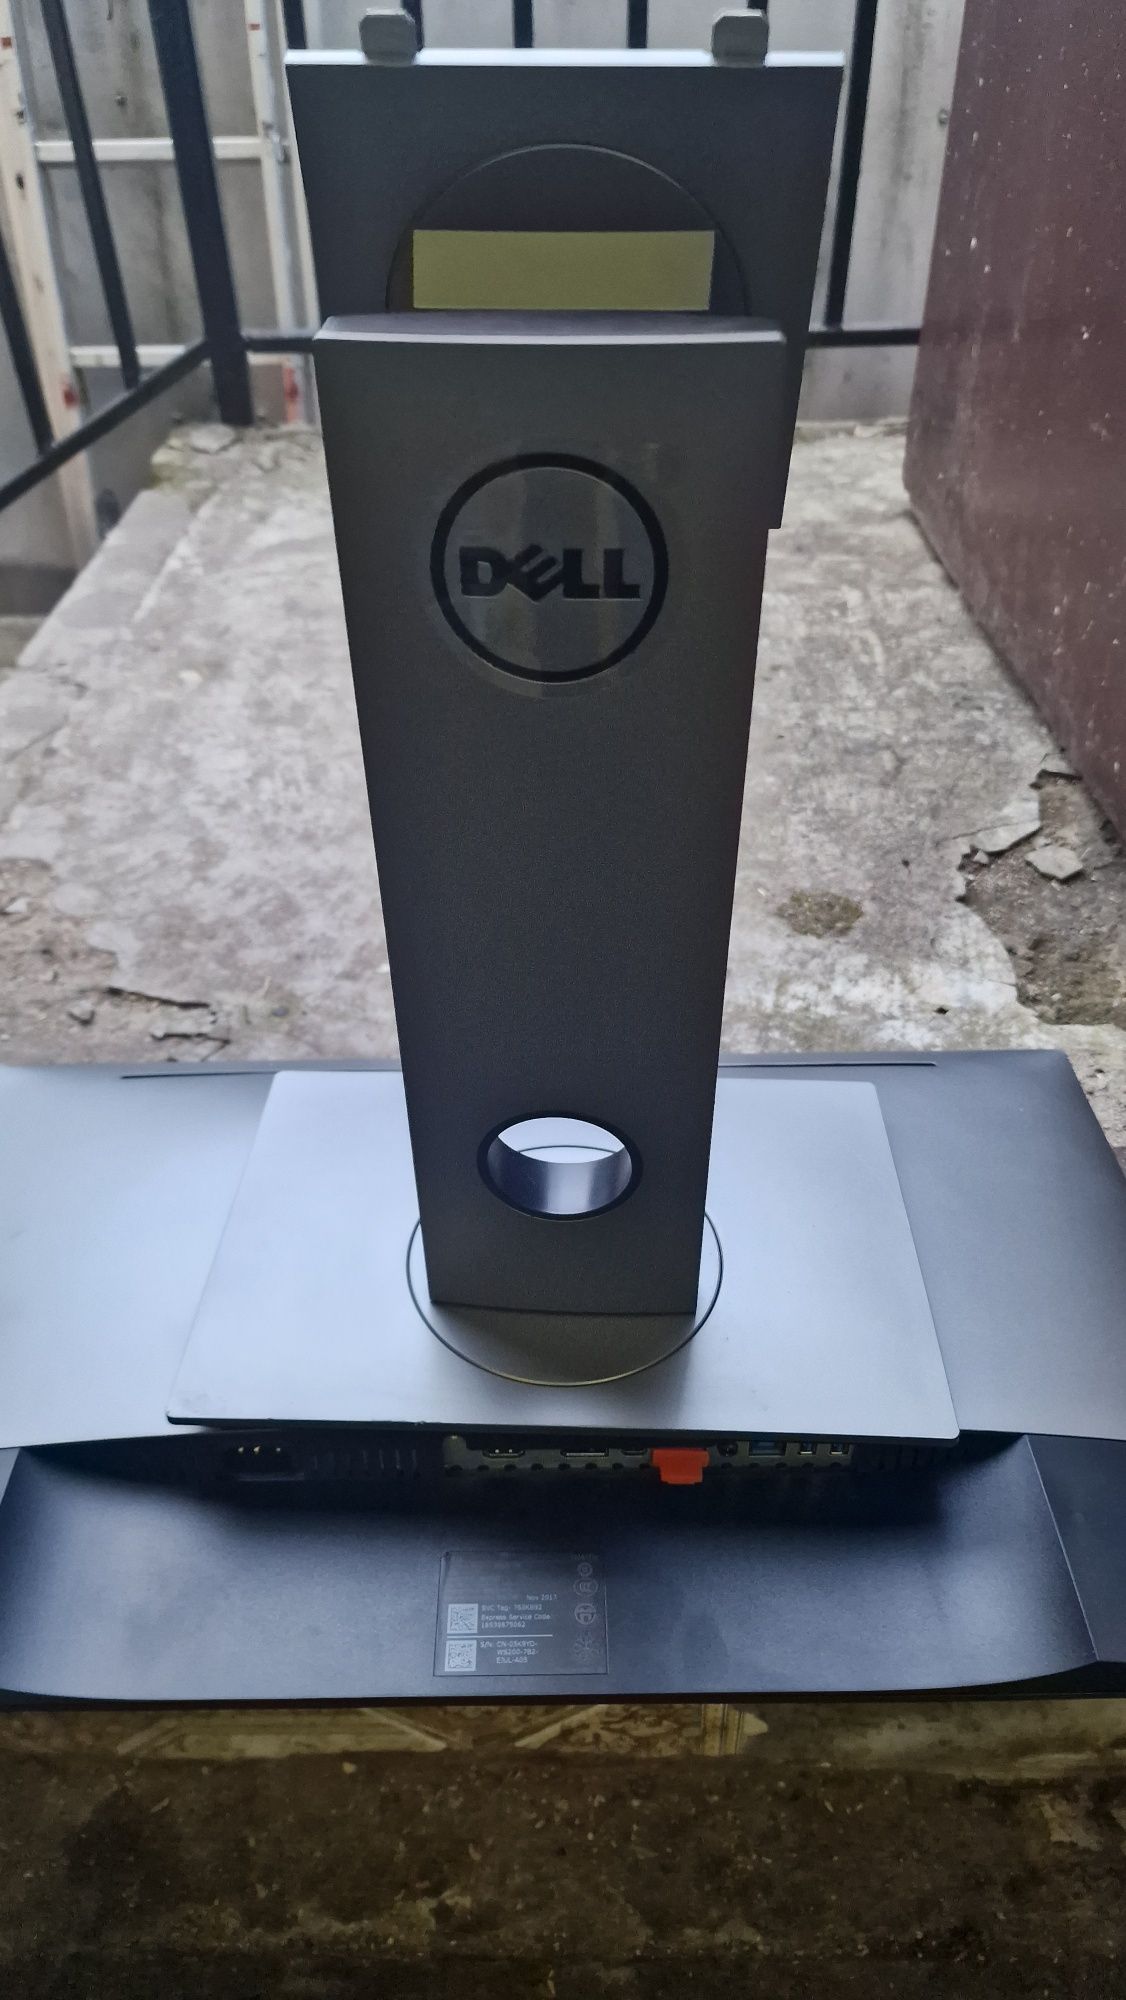 Monitor Dell  Led 24 całe 2017 rok - uszkodzony